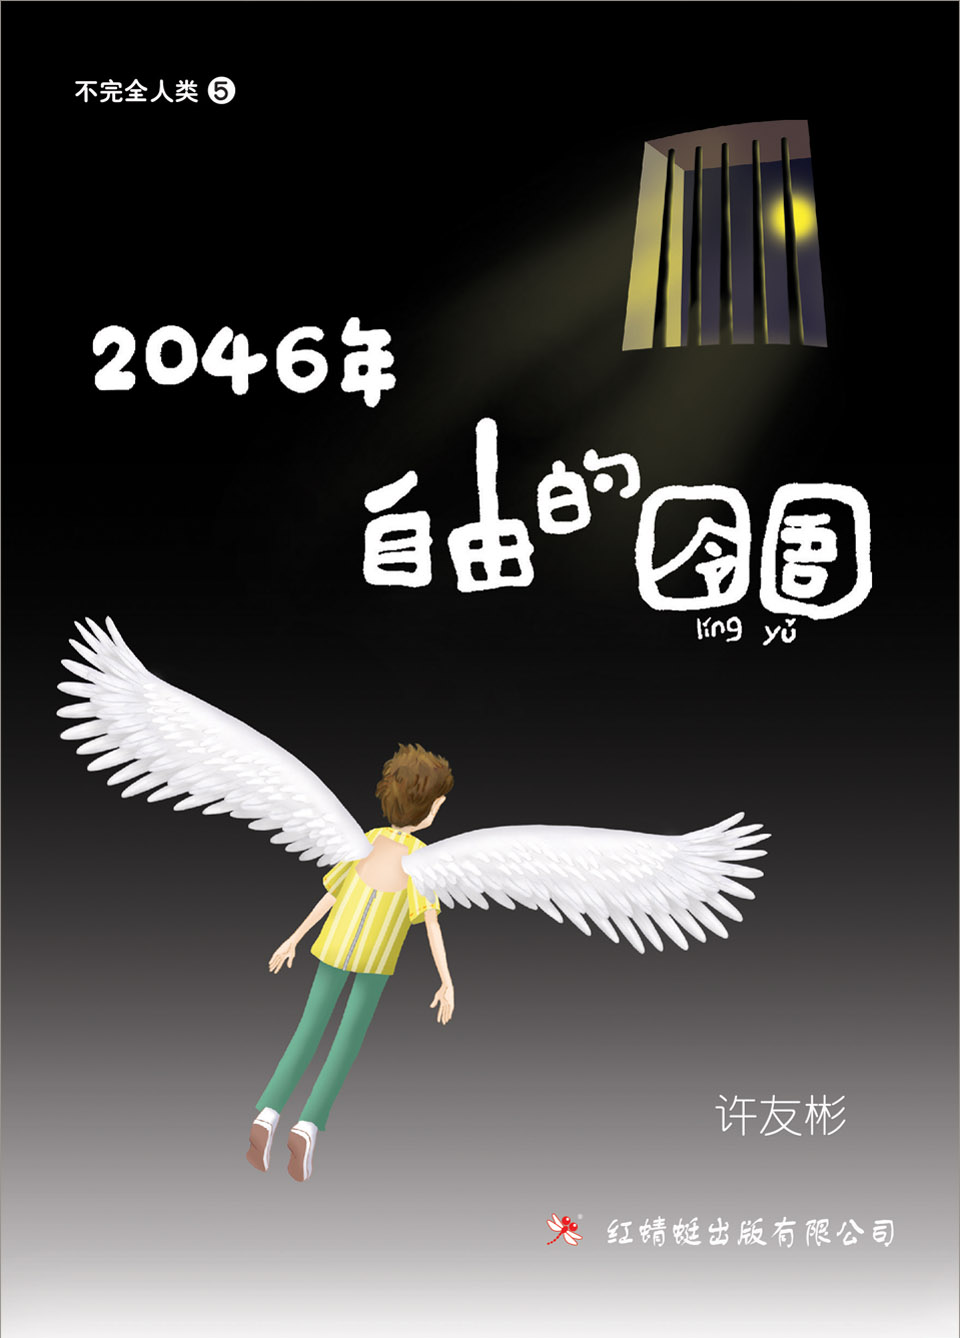 许友彬 - 《2046年——自由的囹圄》